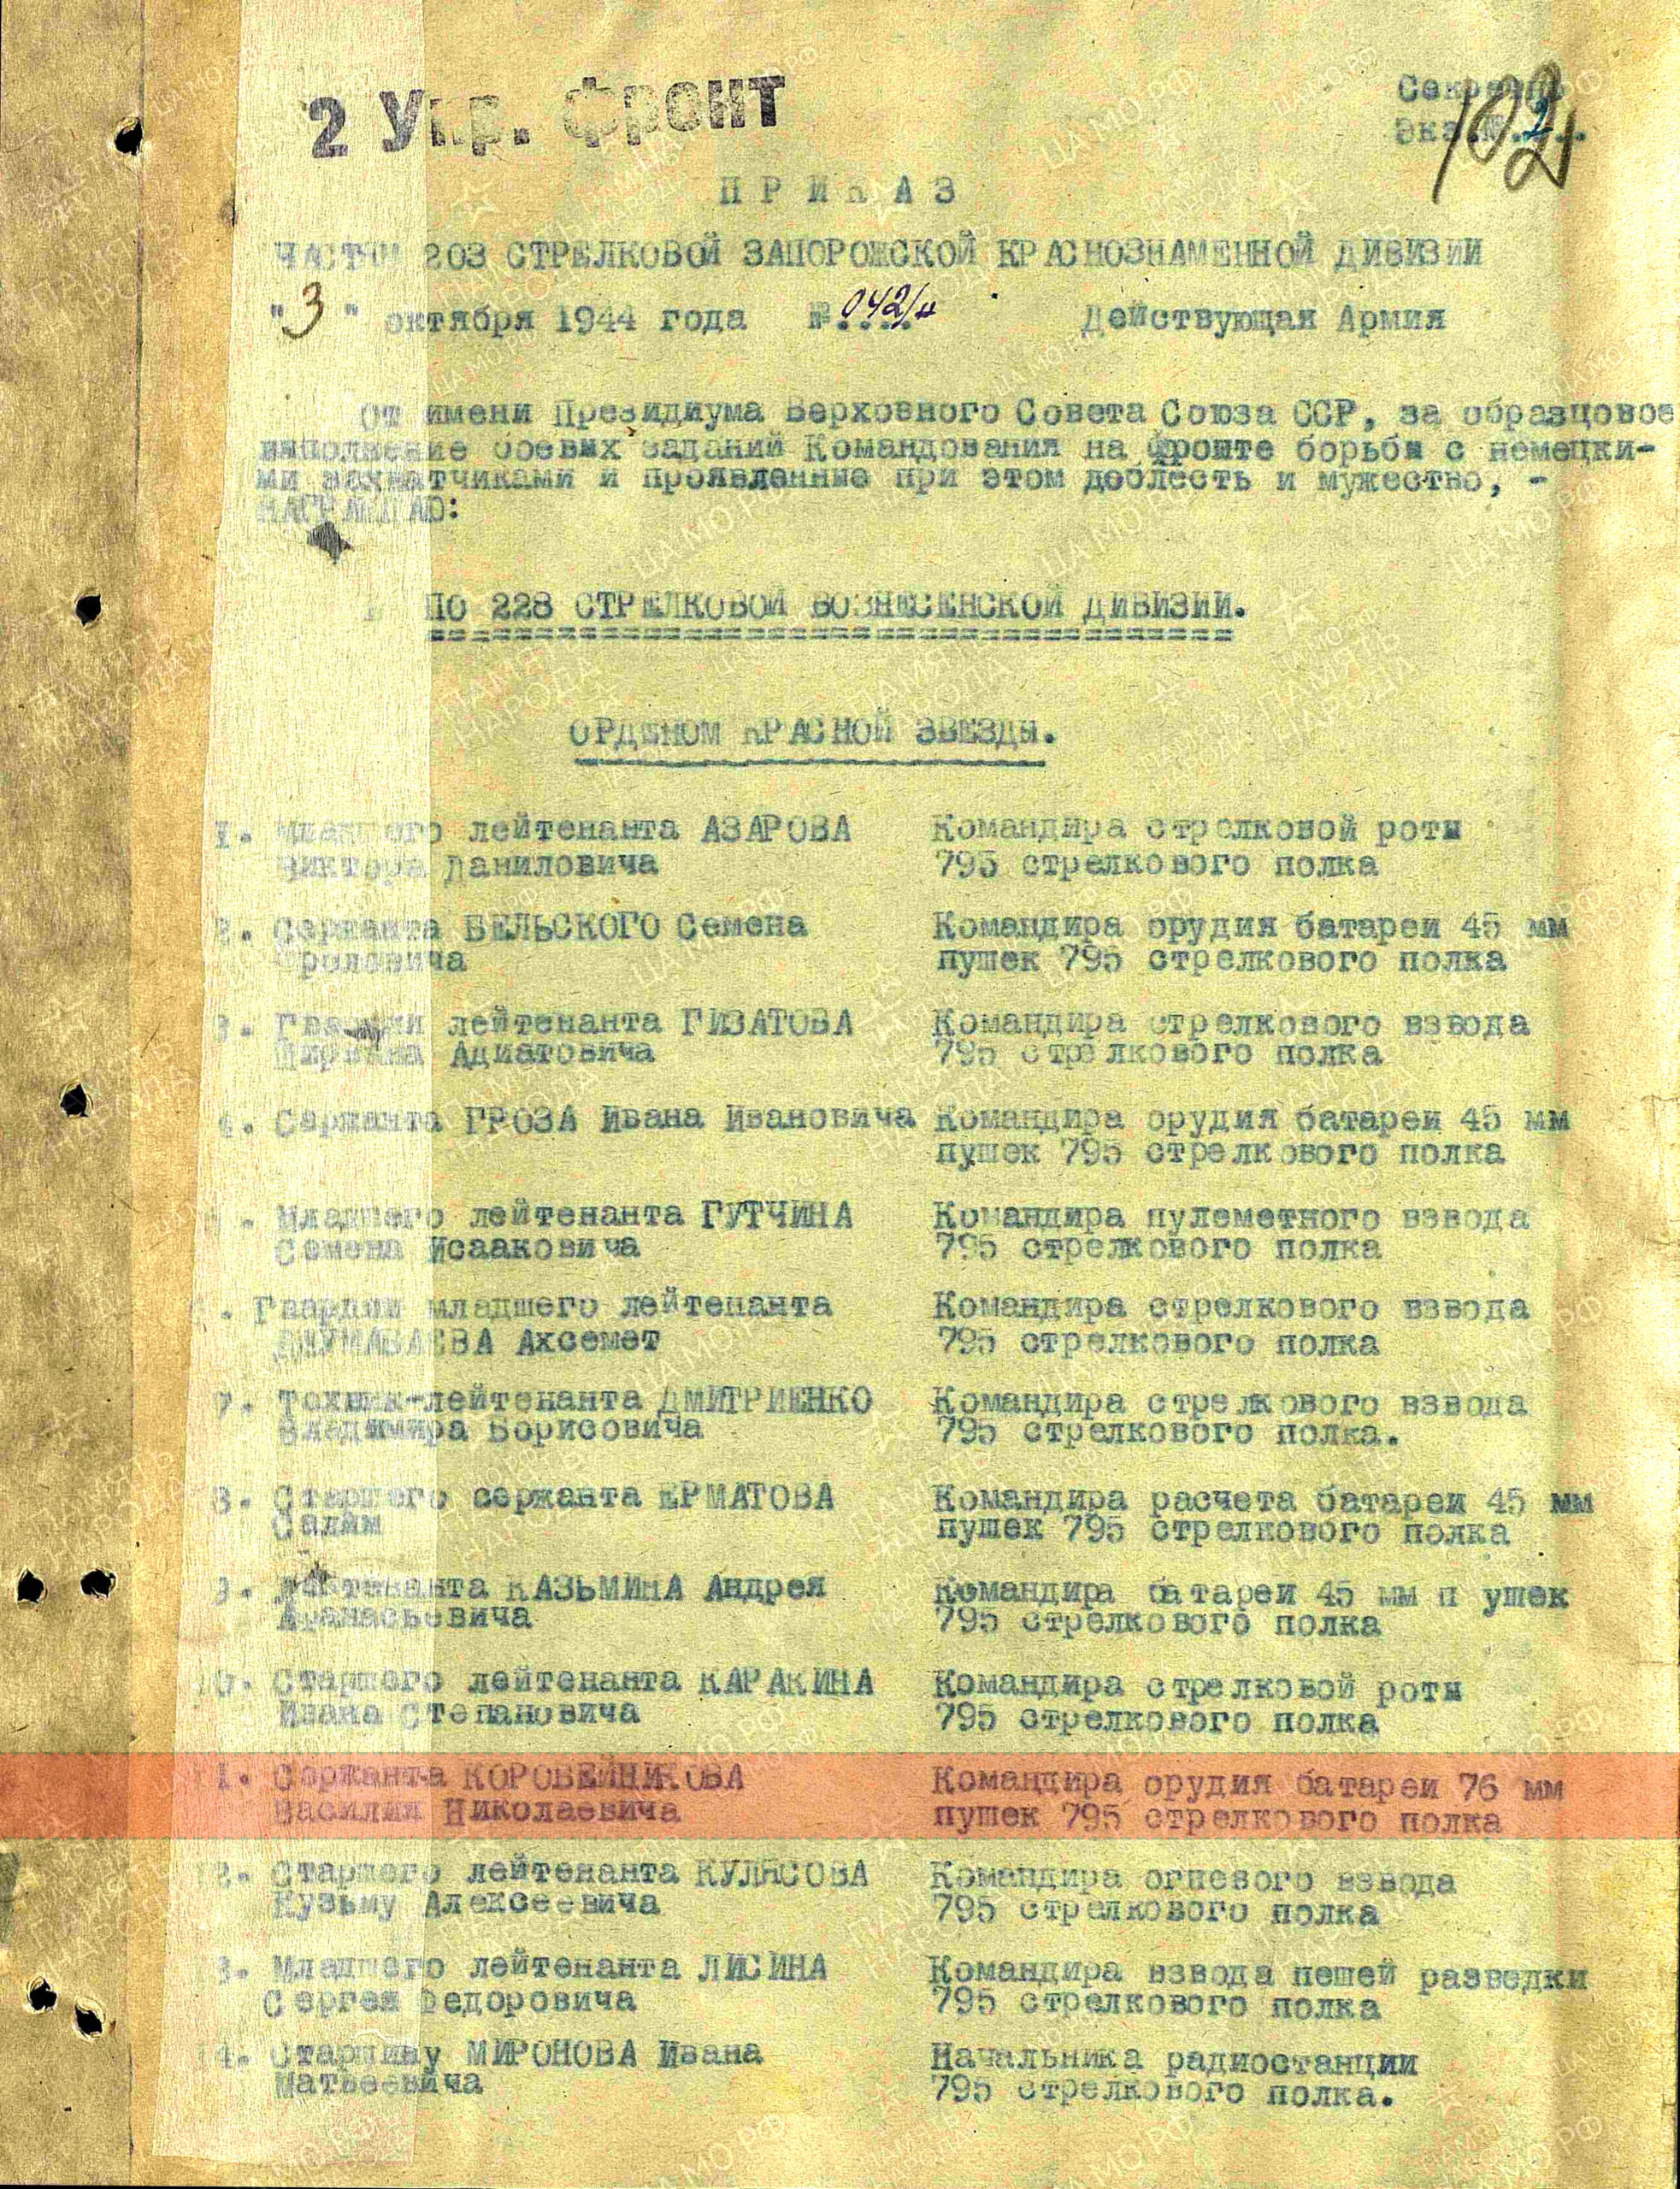 Приказ о награждении (строка в наградном списке). Орден Красной Звезды, 03.10.1944